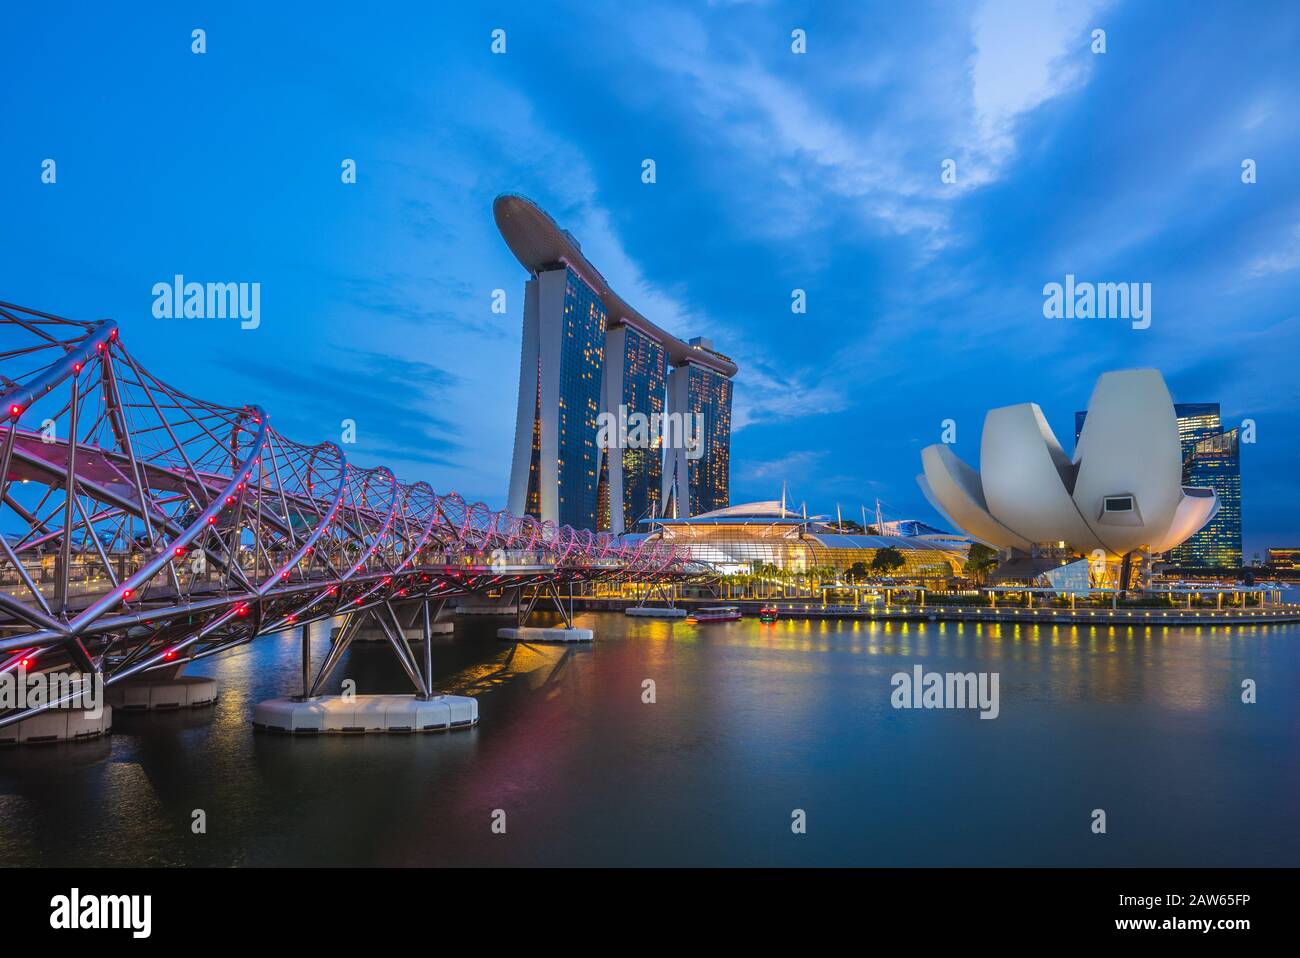 Singapore - 6 febbraio 2020: Skyline di singapore presso la baia del porto turistico con il famoso punto di riferimento di singapore: Sands, Helix, e Museo artscience Foto Stock